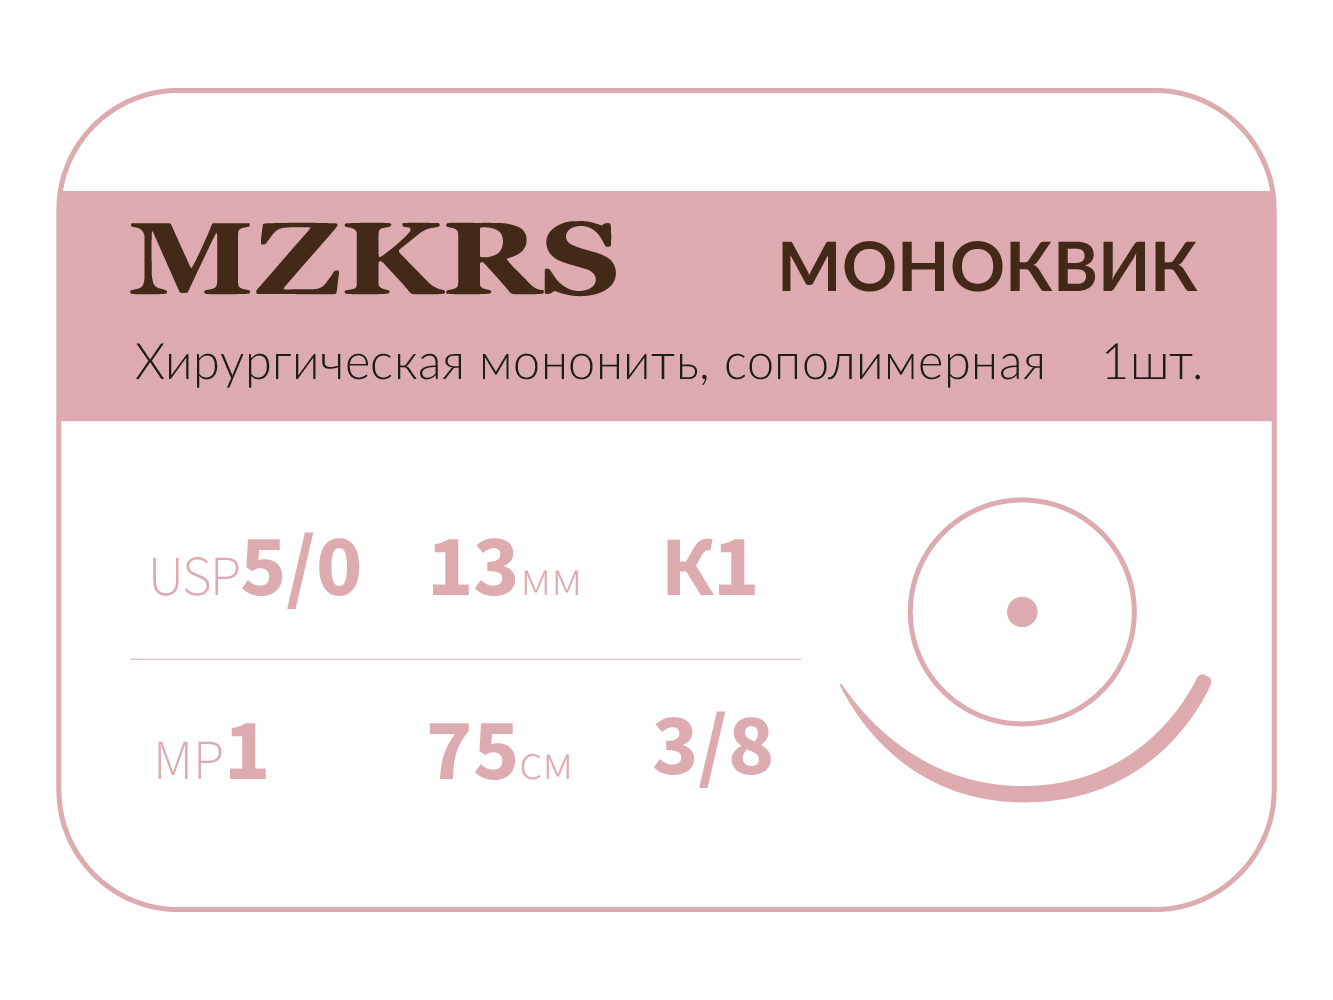 1338К1 Premium-5/0 (1,0)75  МОНК МОНОКВИК хирургическая мононить, сополимерная, колющая игла, MZKRS (Россия)